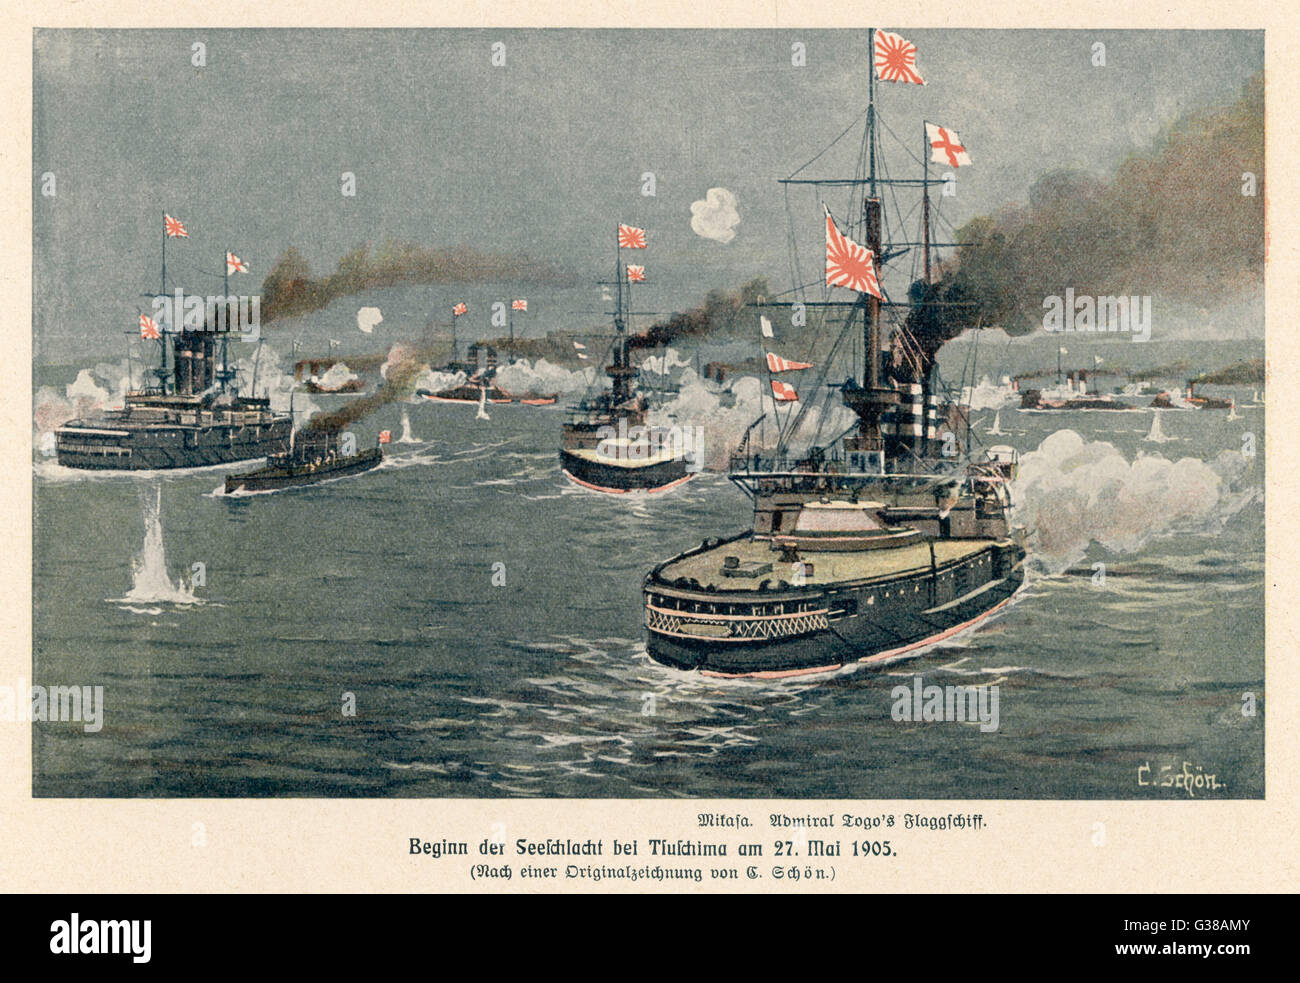 Schlacht von TSUSHIMA Straße der japanischen Admiral Togo dampft in Aktion in seinem Flaggschiff "Mikafa", eine überwältigende Niederlage der russischen Flotte termingerecht zuzufügen: 27. / 28. Mai 1905 Stockfoto